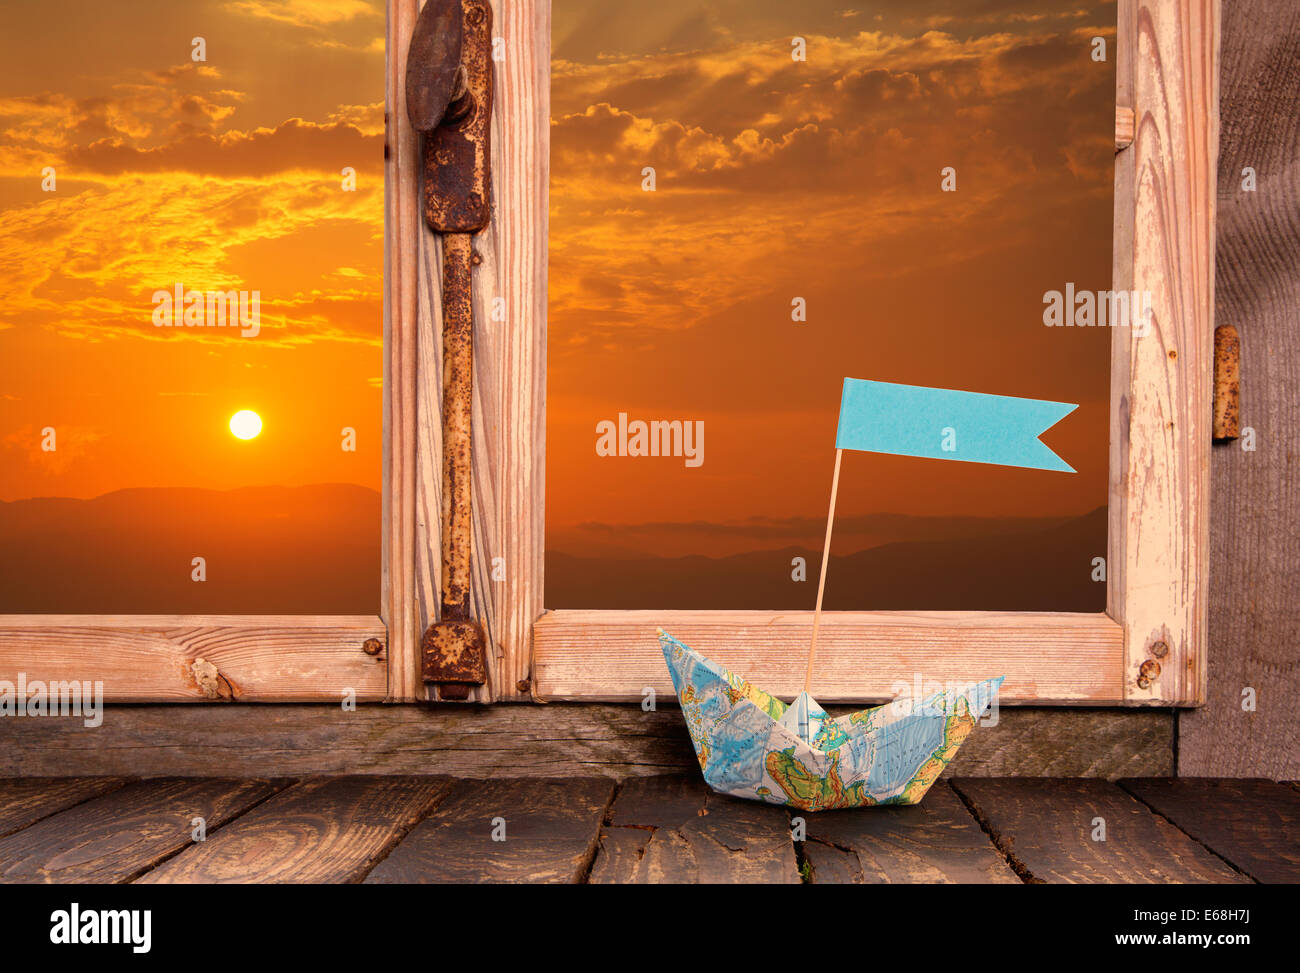 Urlaub Träume: Holzfenster Hintergrund mit Blick auf den Sonnenuntergang verziert mit einem Segelboot auf der Fensterbank. Stockfoto